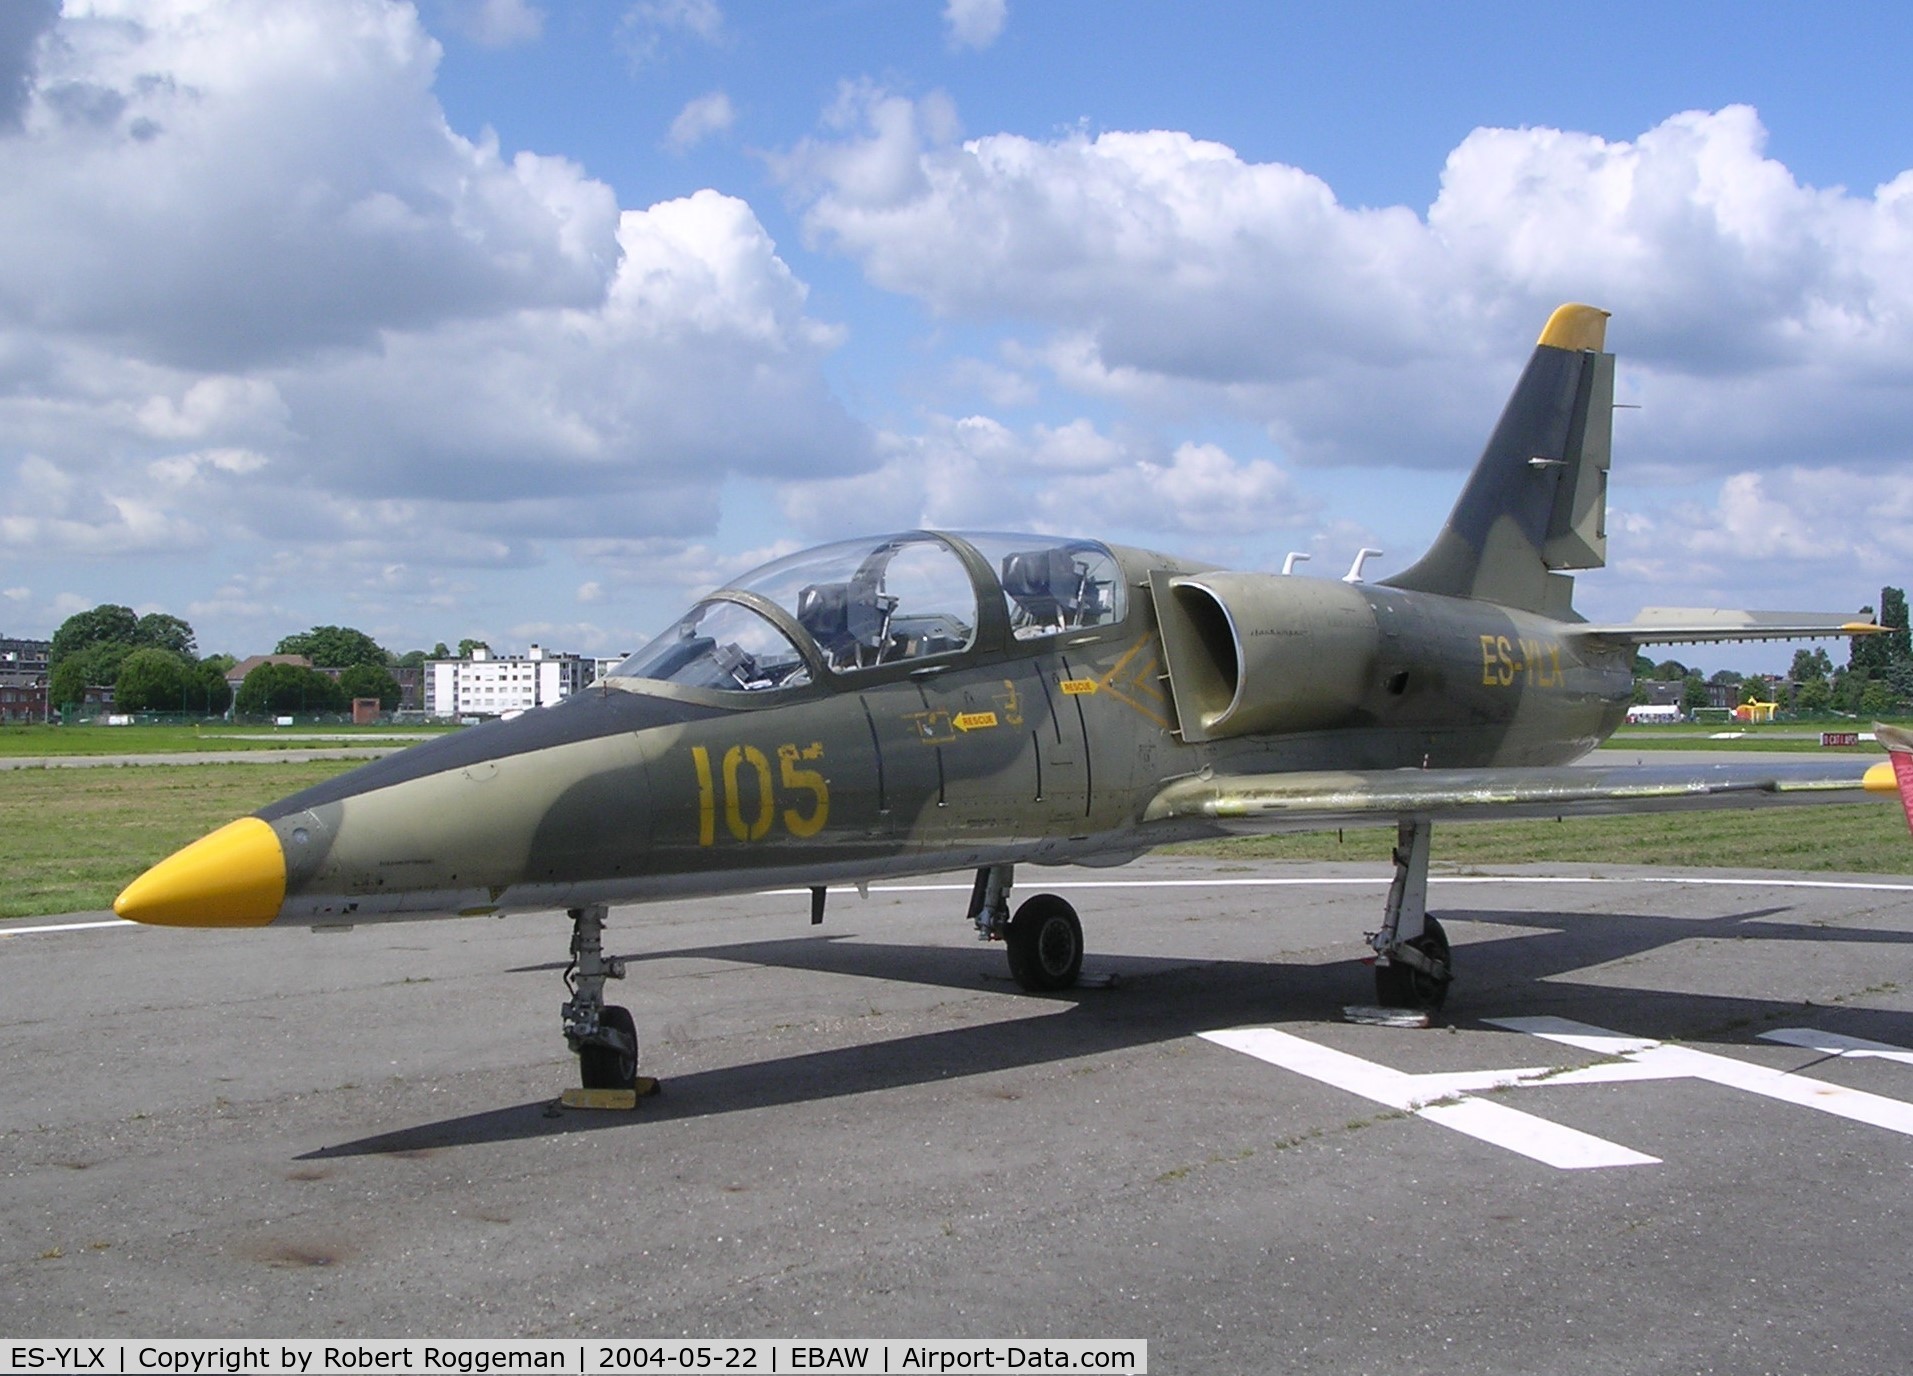 ES-YLX, Aero L-39 Albatros C/N 432905, STAMPE FLY IN.
105.